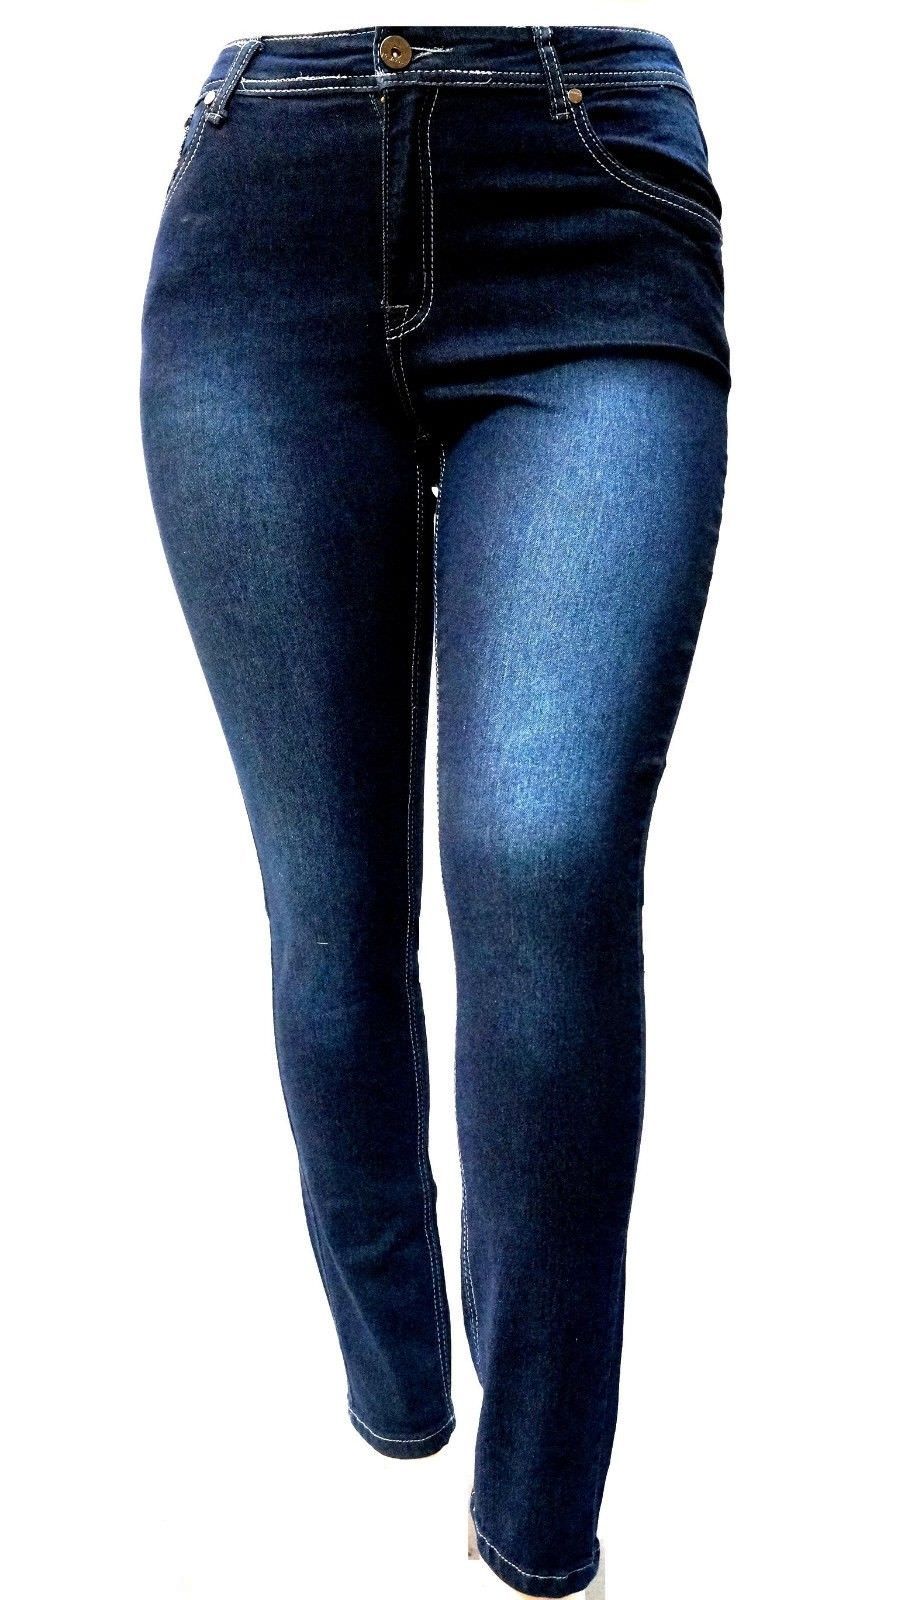 L'SQUARE Womens Plus Size Denim jeans Dark Blue Flap Pocket Stretch Skinny Leg LS-98173MS | Walmart (US)